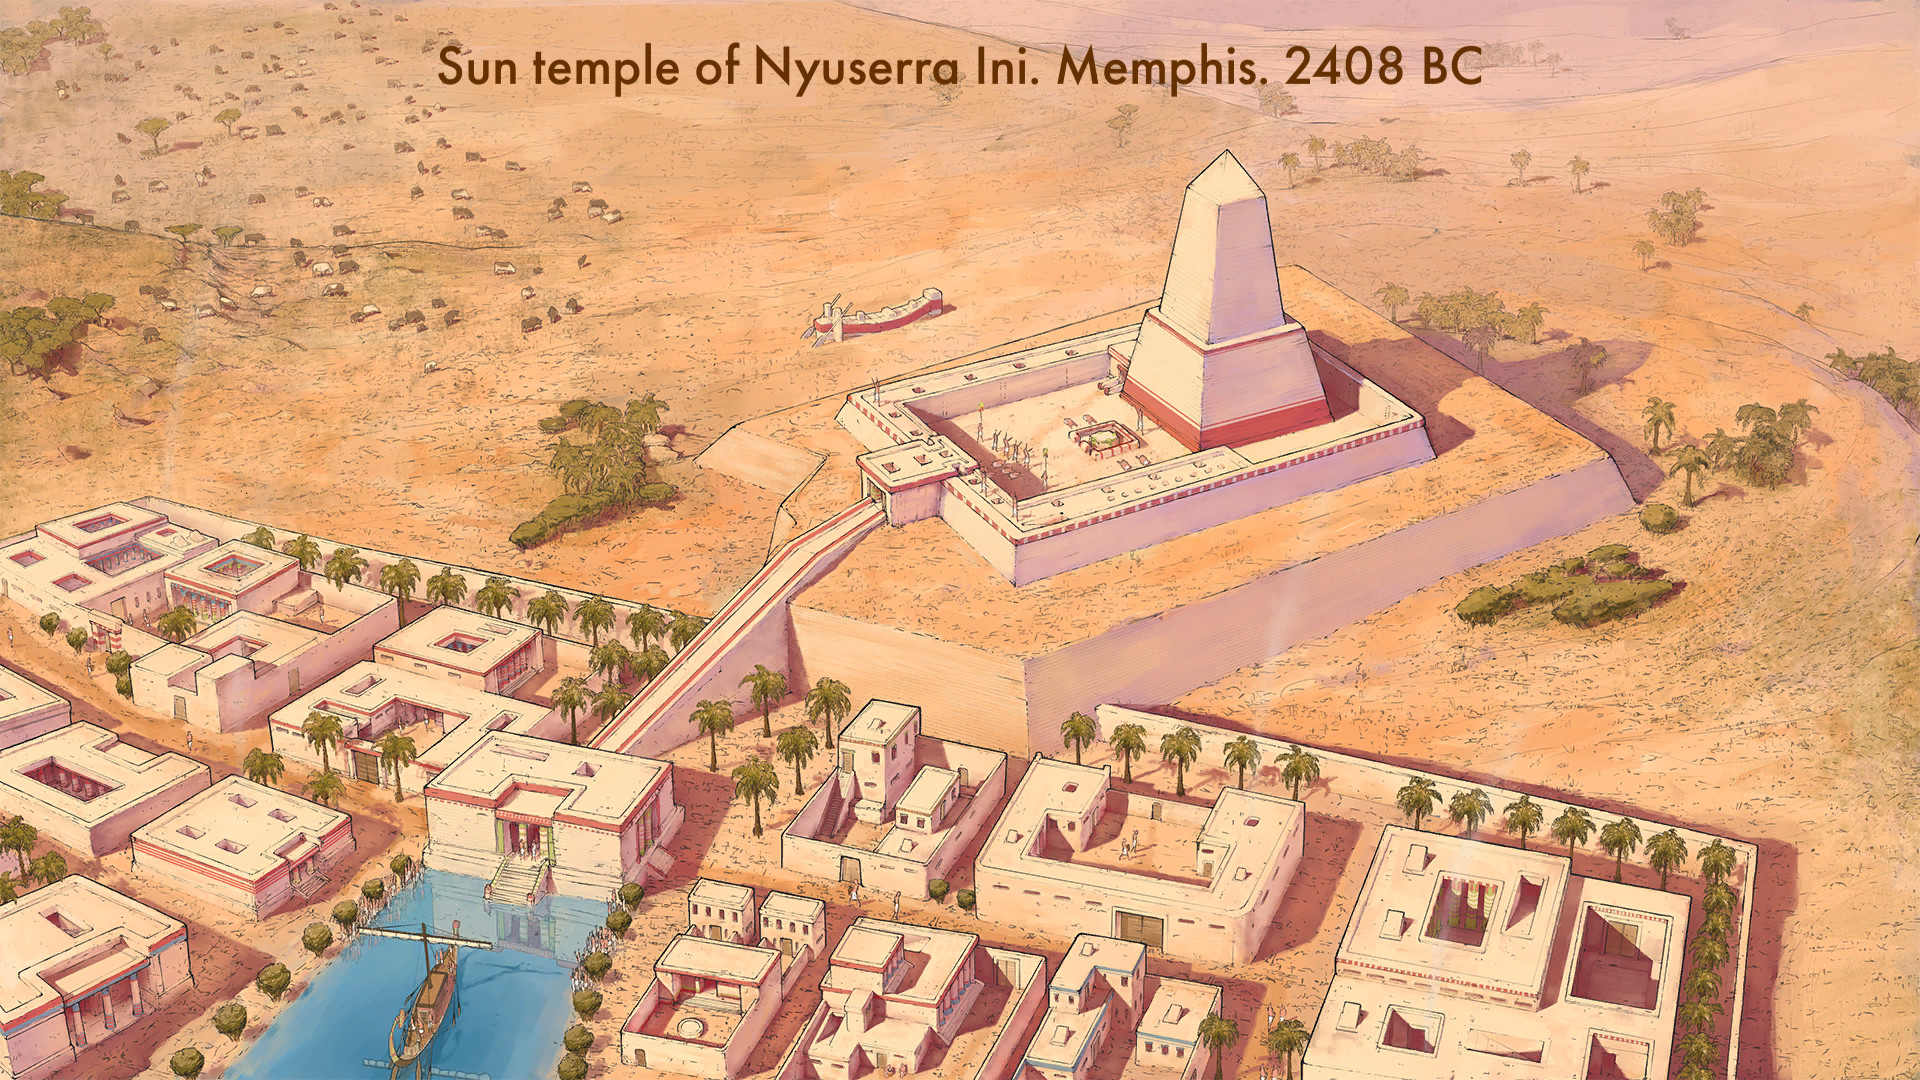 משחקי אסטרטגיה ניידים הטובים ביותר: מצרים: הממלכה הישנה. תמונה מציגה יישוב מצרי עתיק, עם טקסט שקורא